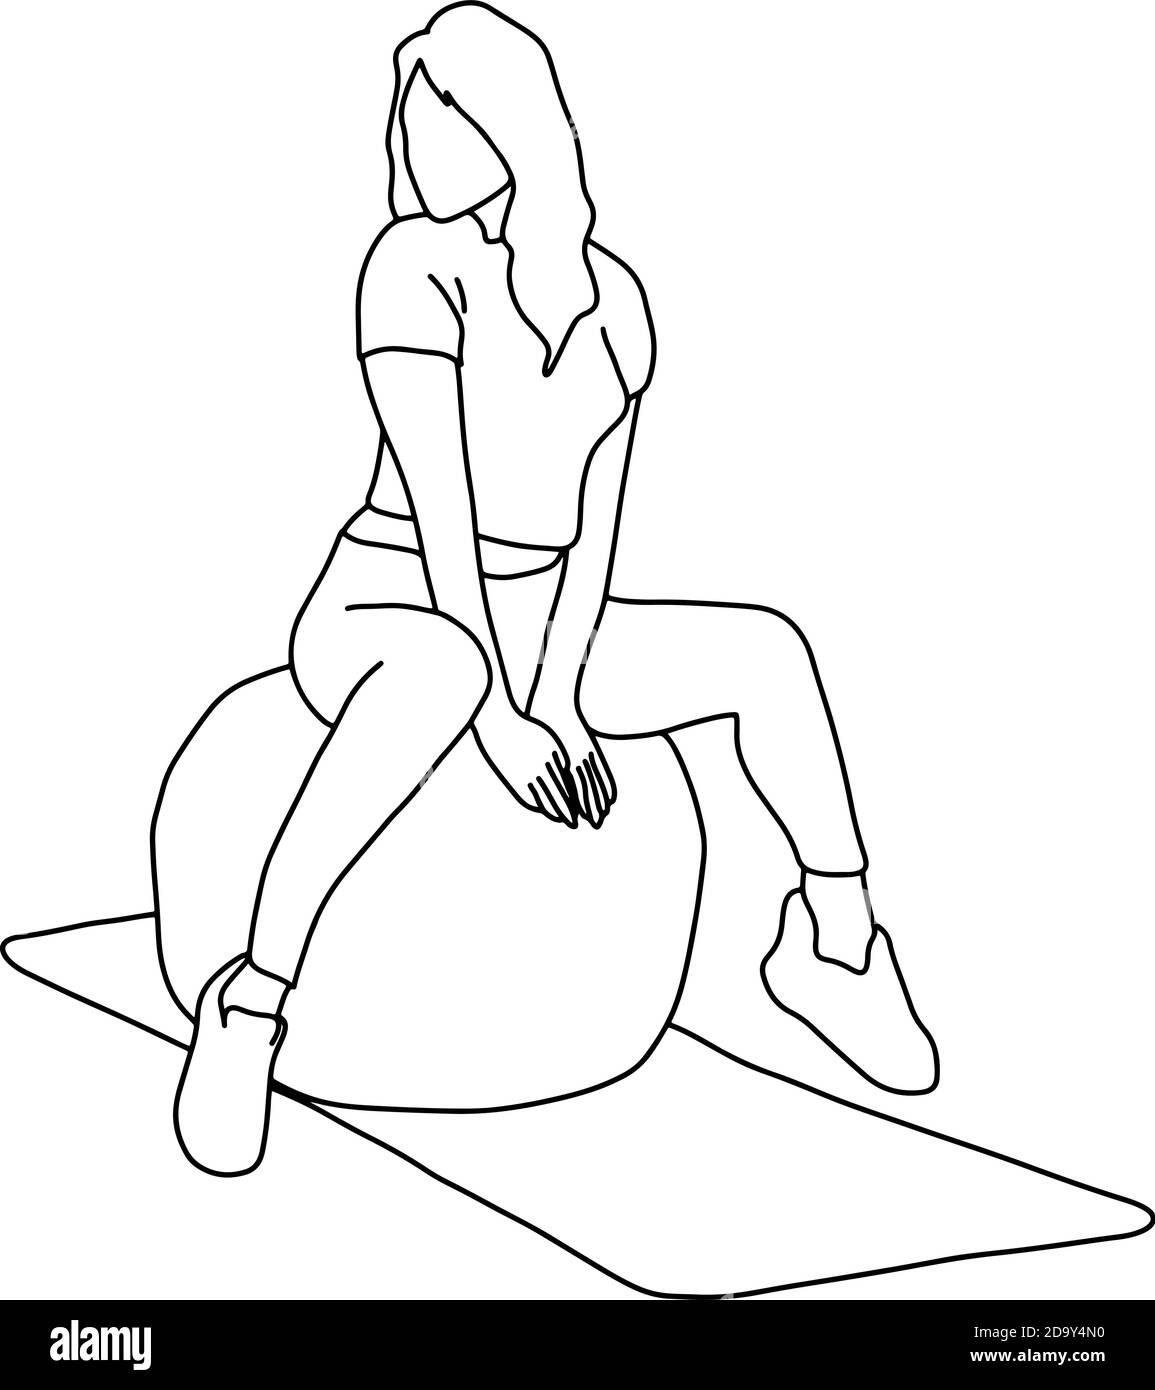 Frau sitzt auf Fitness-Ball in Turnhalle Vektor Illustration Skizze doodle handgezeichnet mit schwarzen Linien isoliert auf weißem Hintergrund Stock Vektor